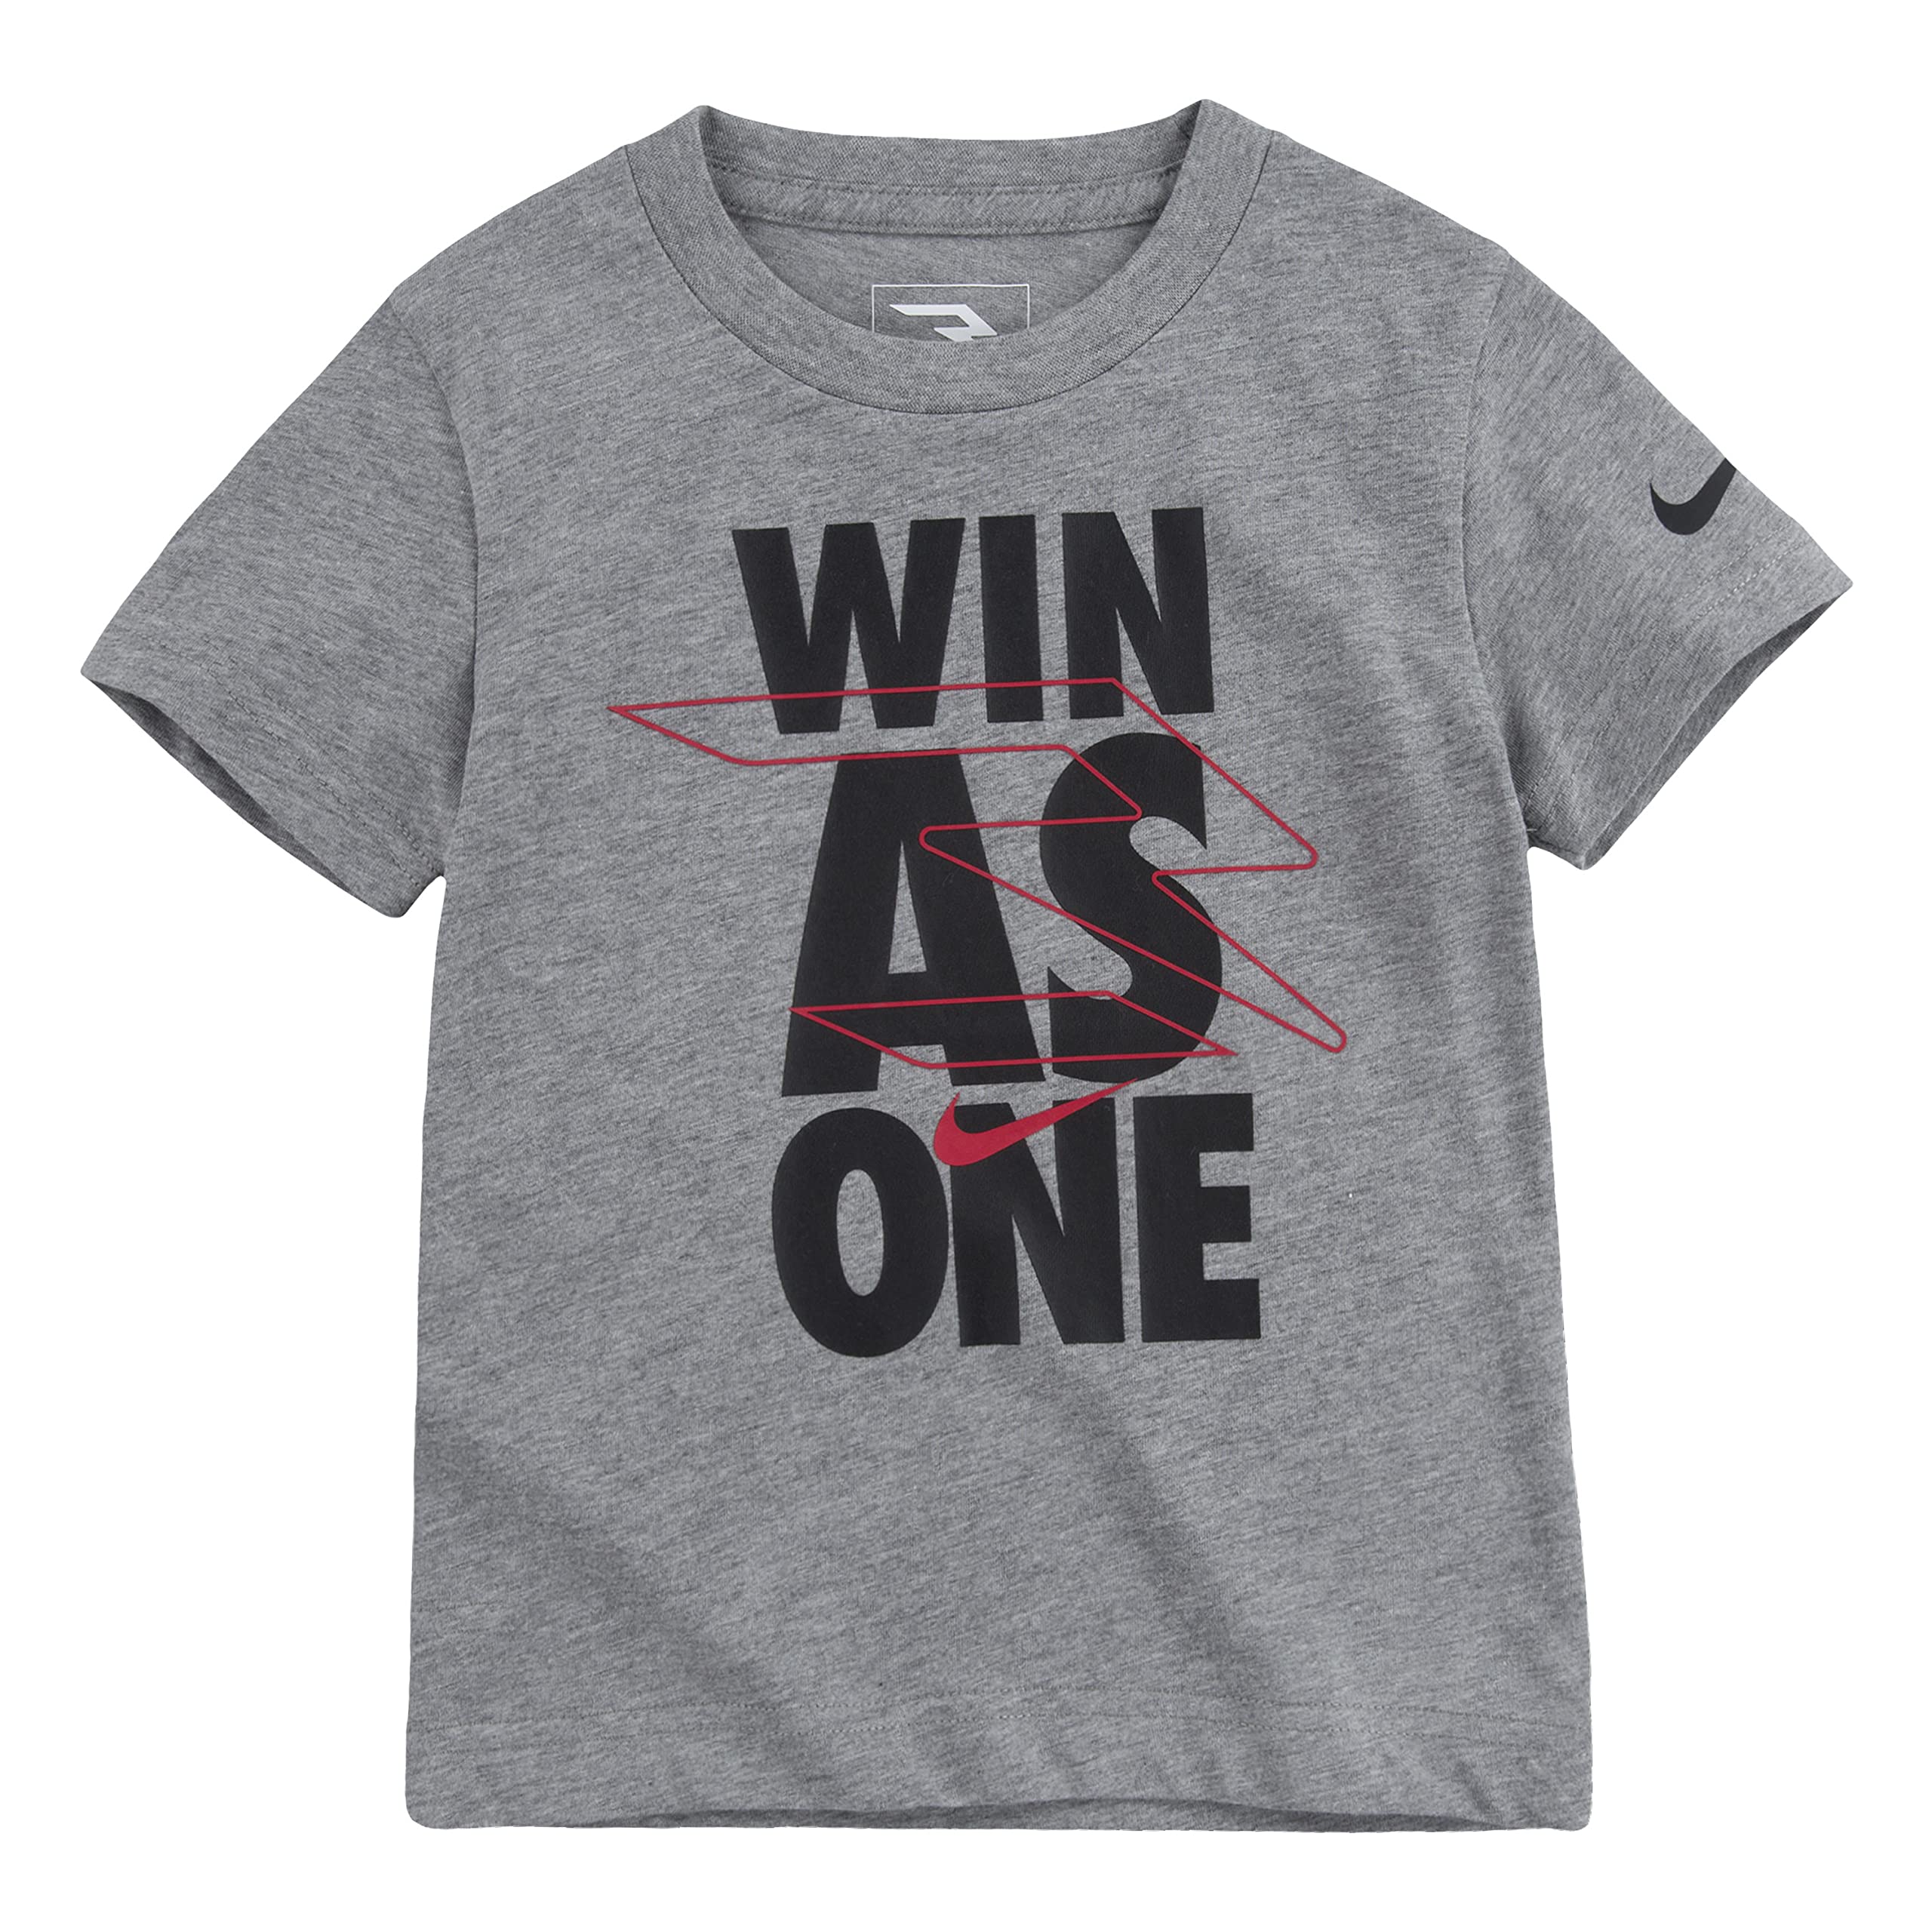 Победить одной футболкой (для малышей) Nike 3BRAND Kids